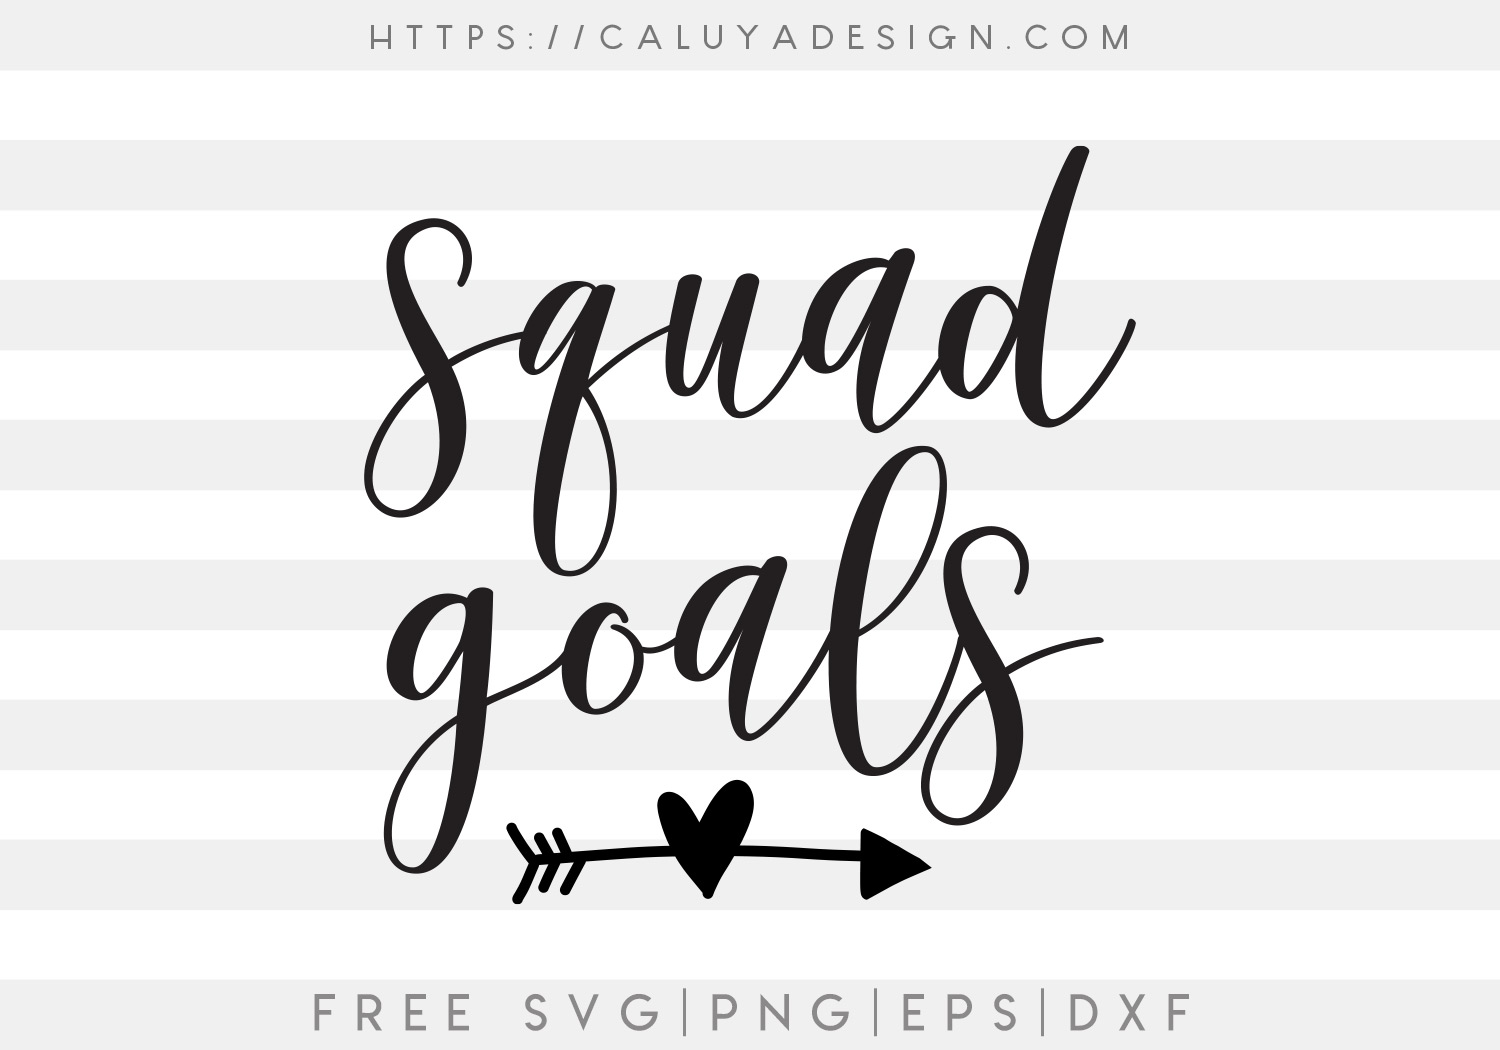 Free Squad Goals SVG Cut File